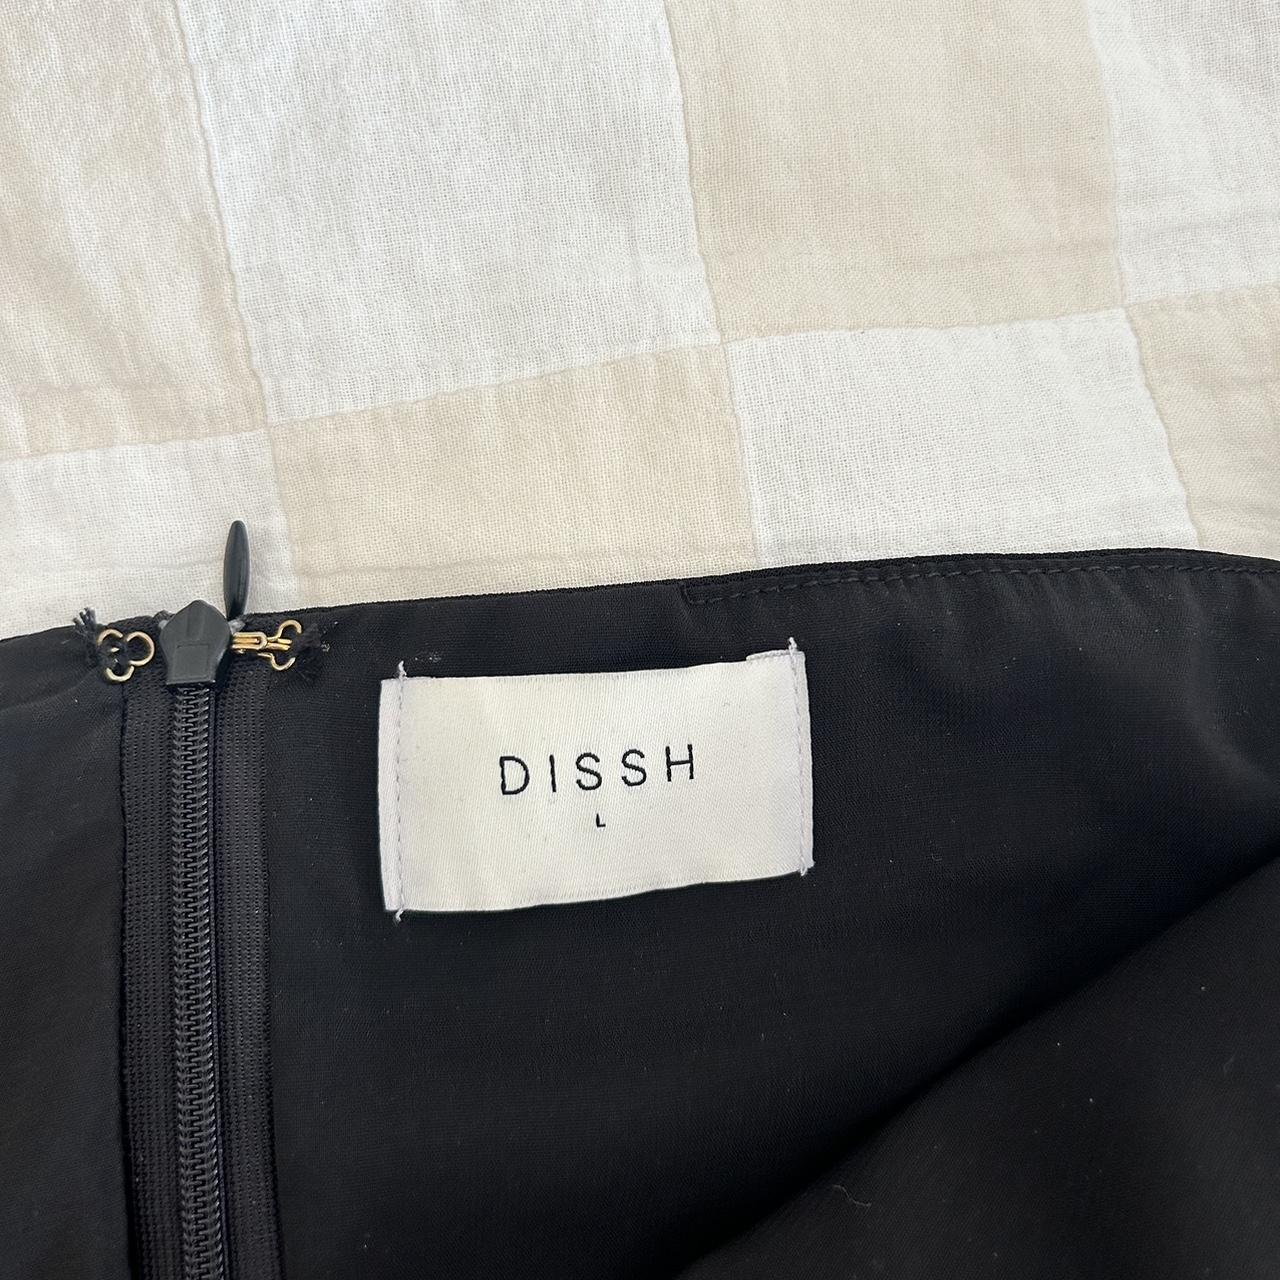 Dissh black maxi dress. Never worn - Depop